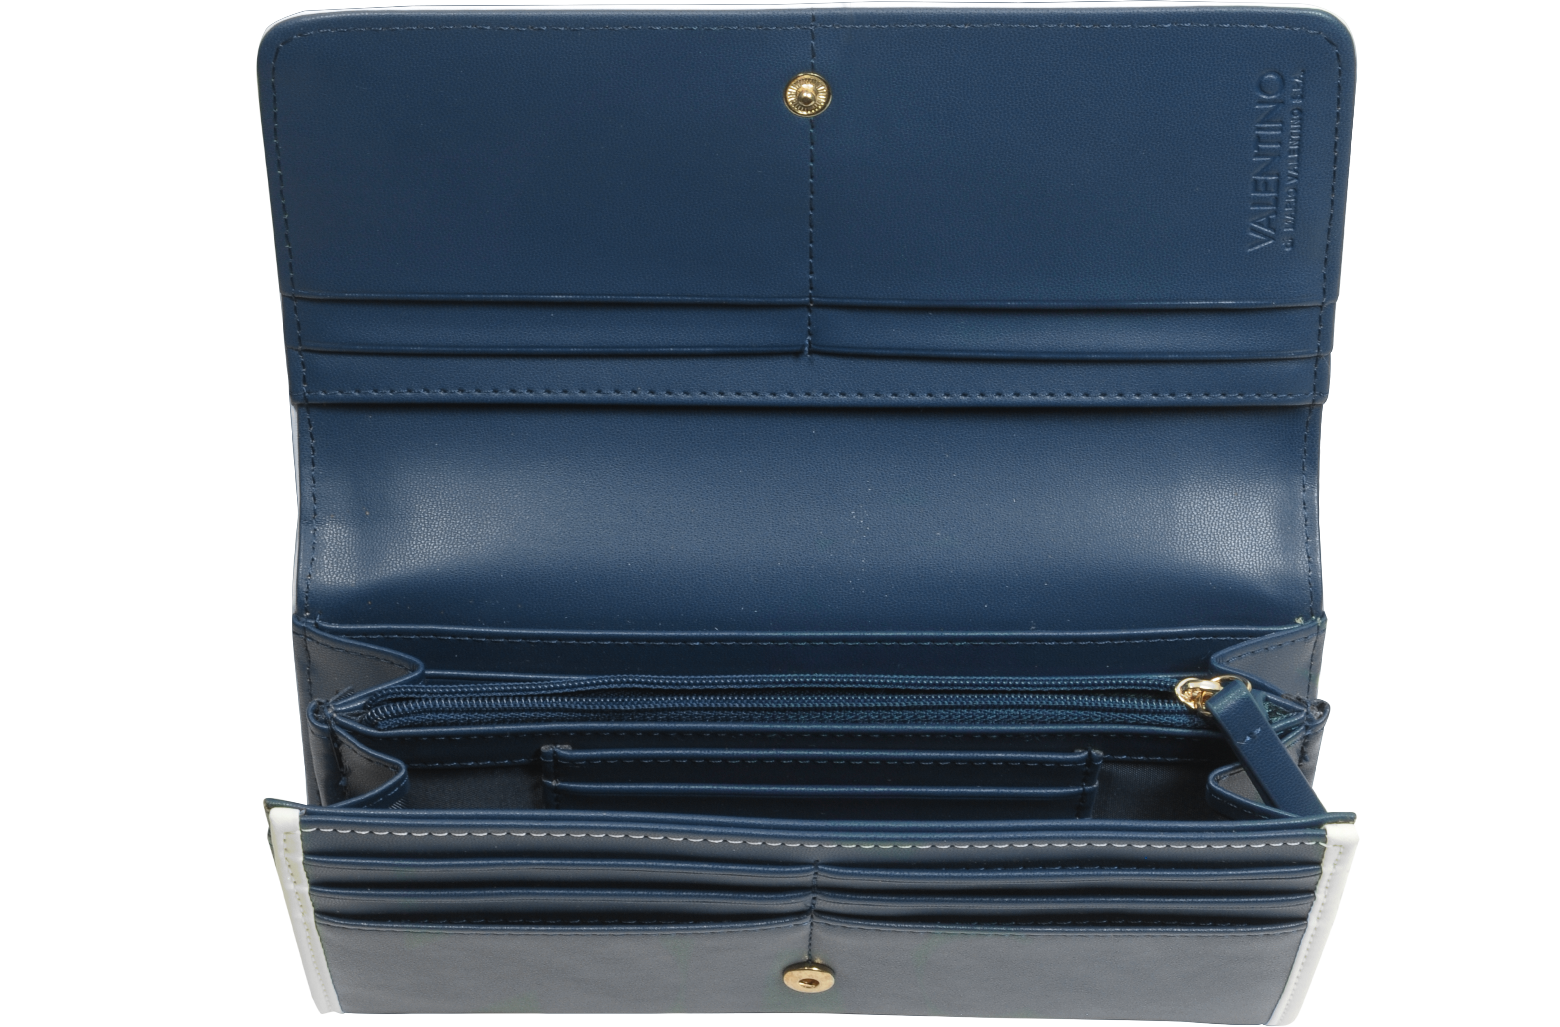 Valentino Garavani Vlogo Bifold Leather Wallet in Abyss Blue